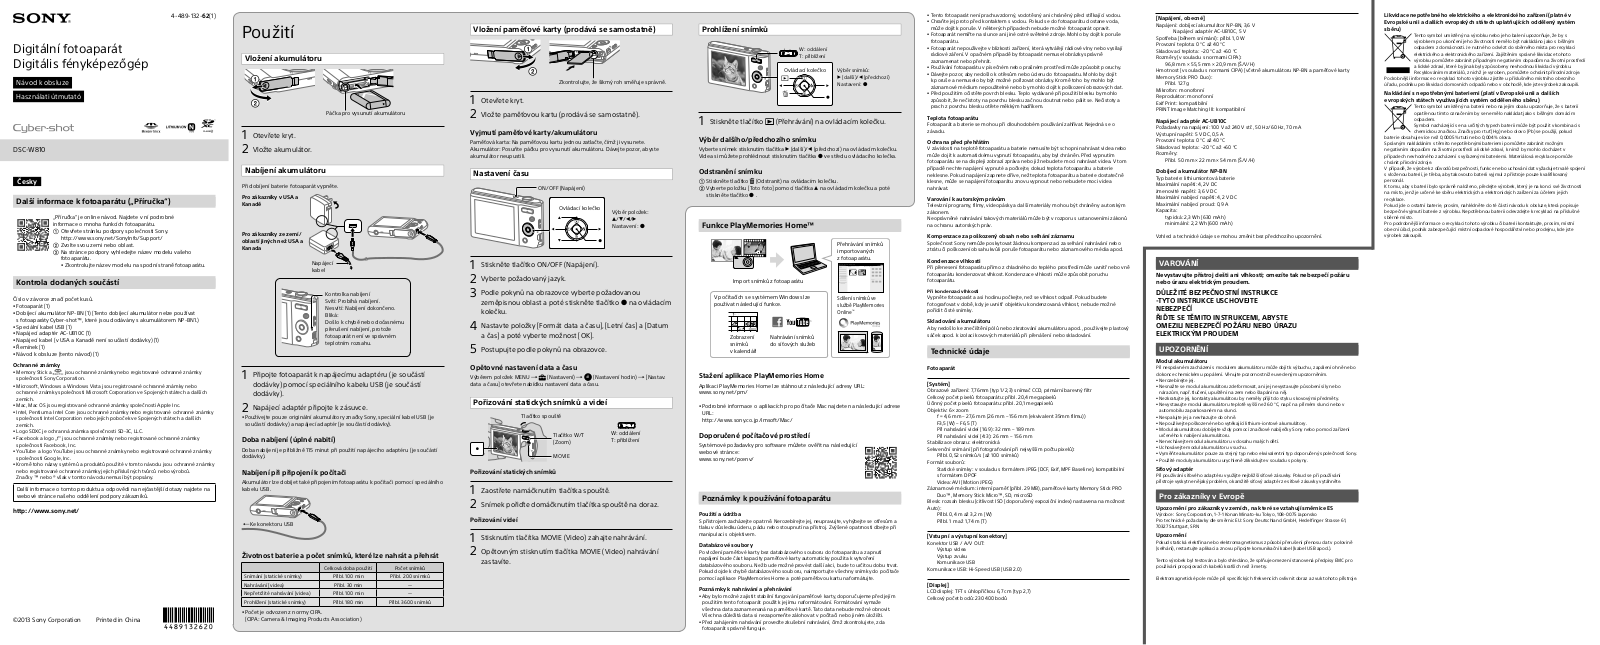 Sony Cyber-shot DSC-W810S, Cyber-shot DSC-W810P User Manual